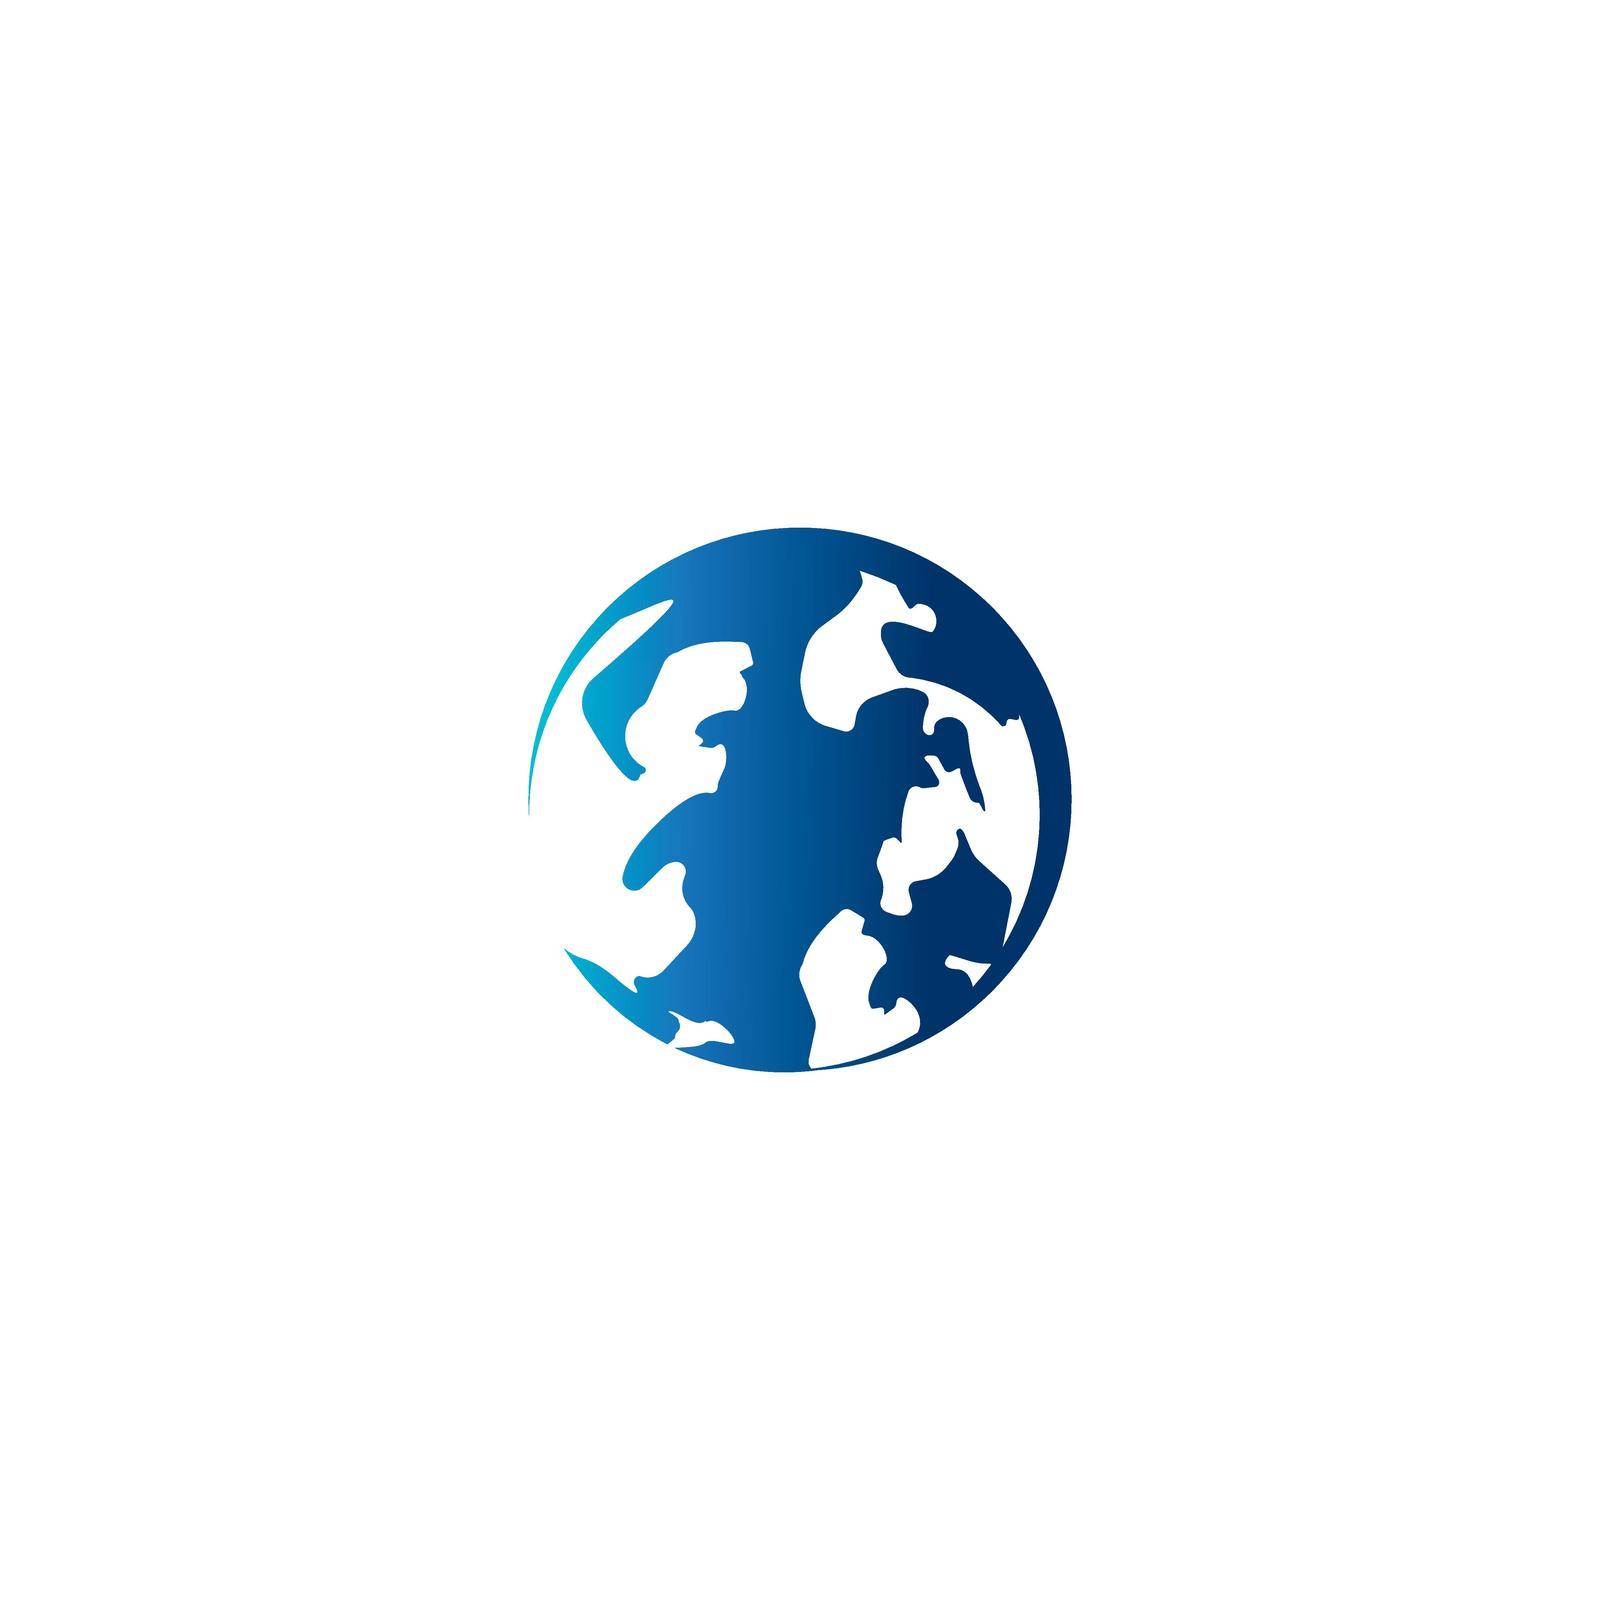 Globe logo by rnking